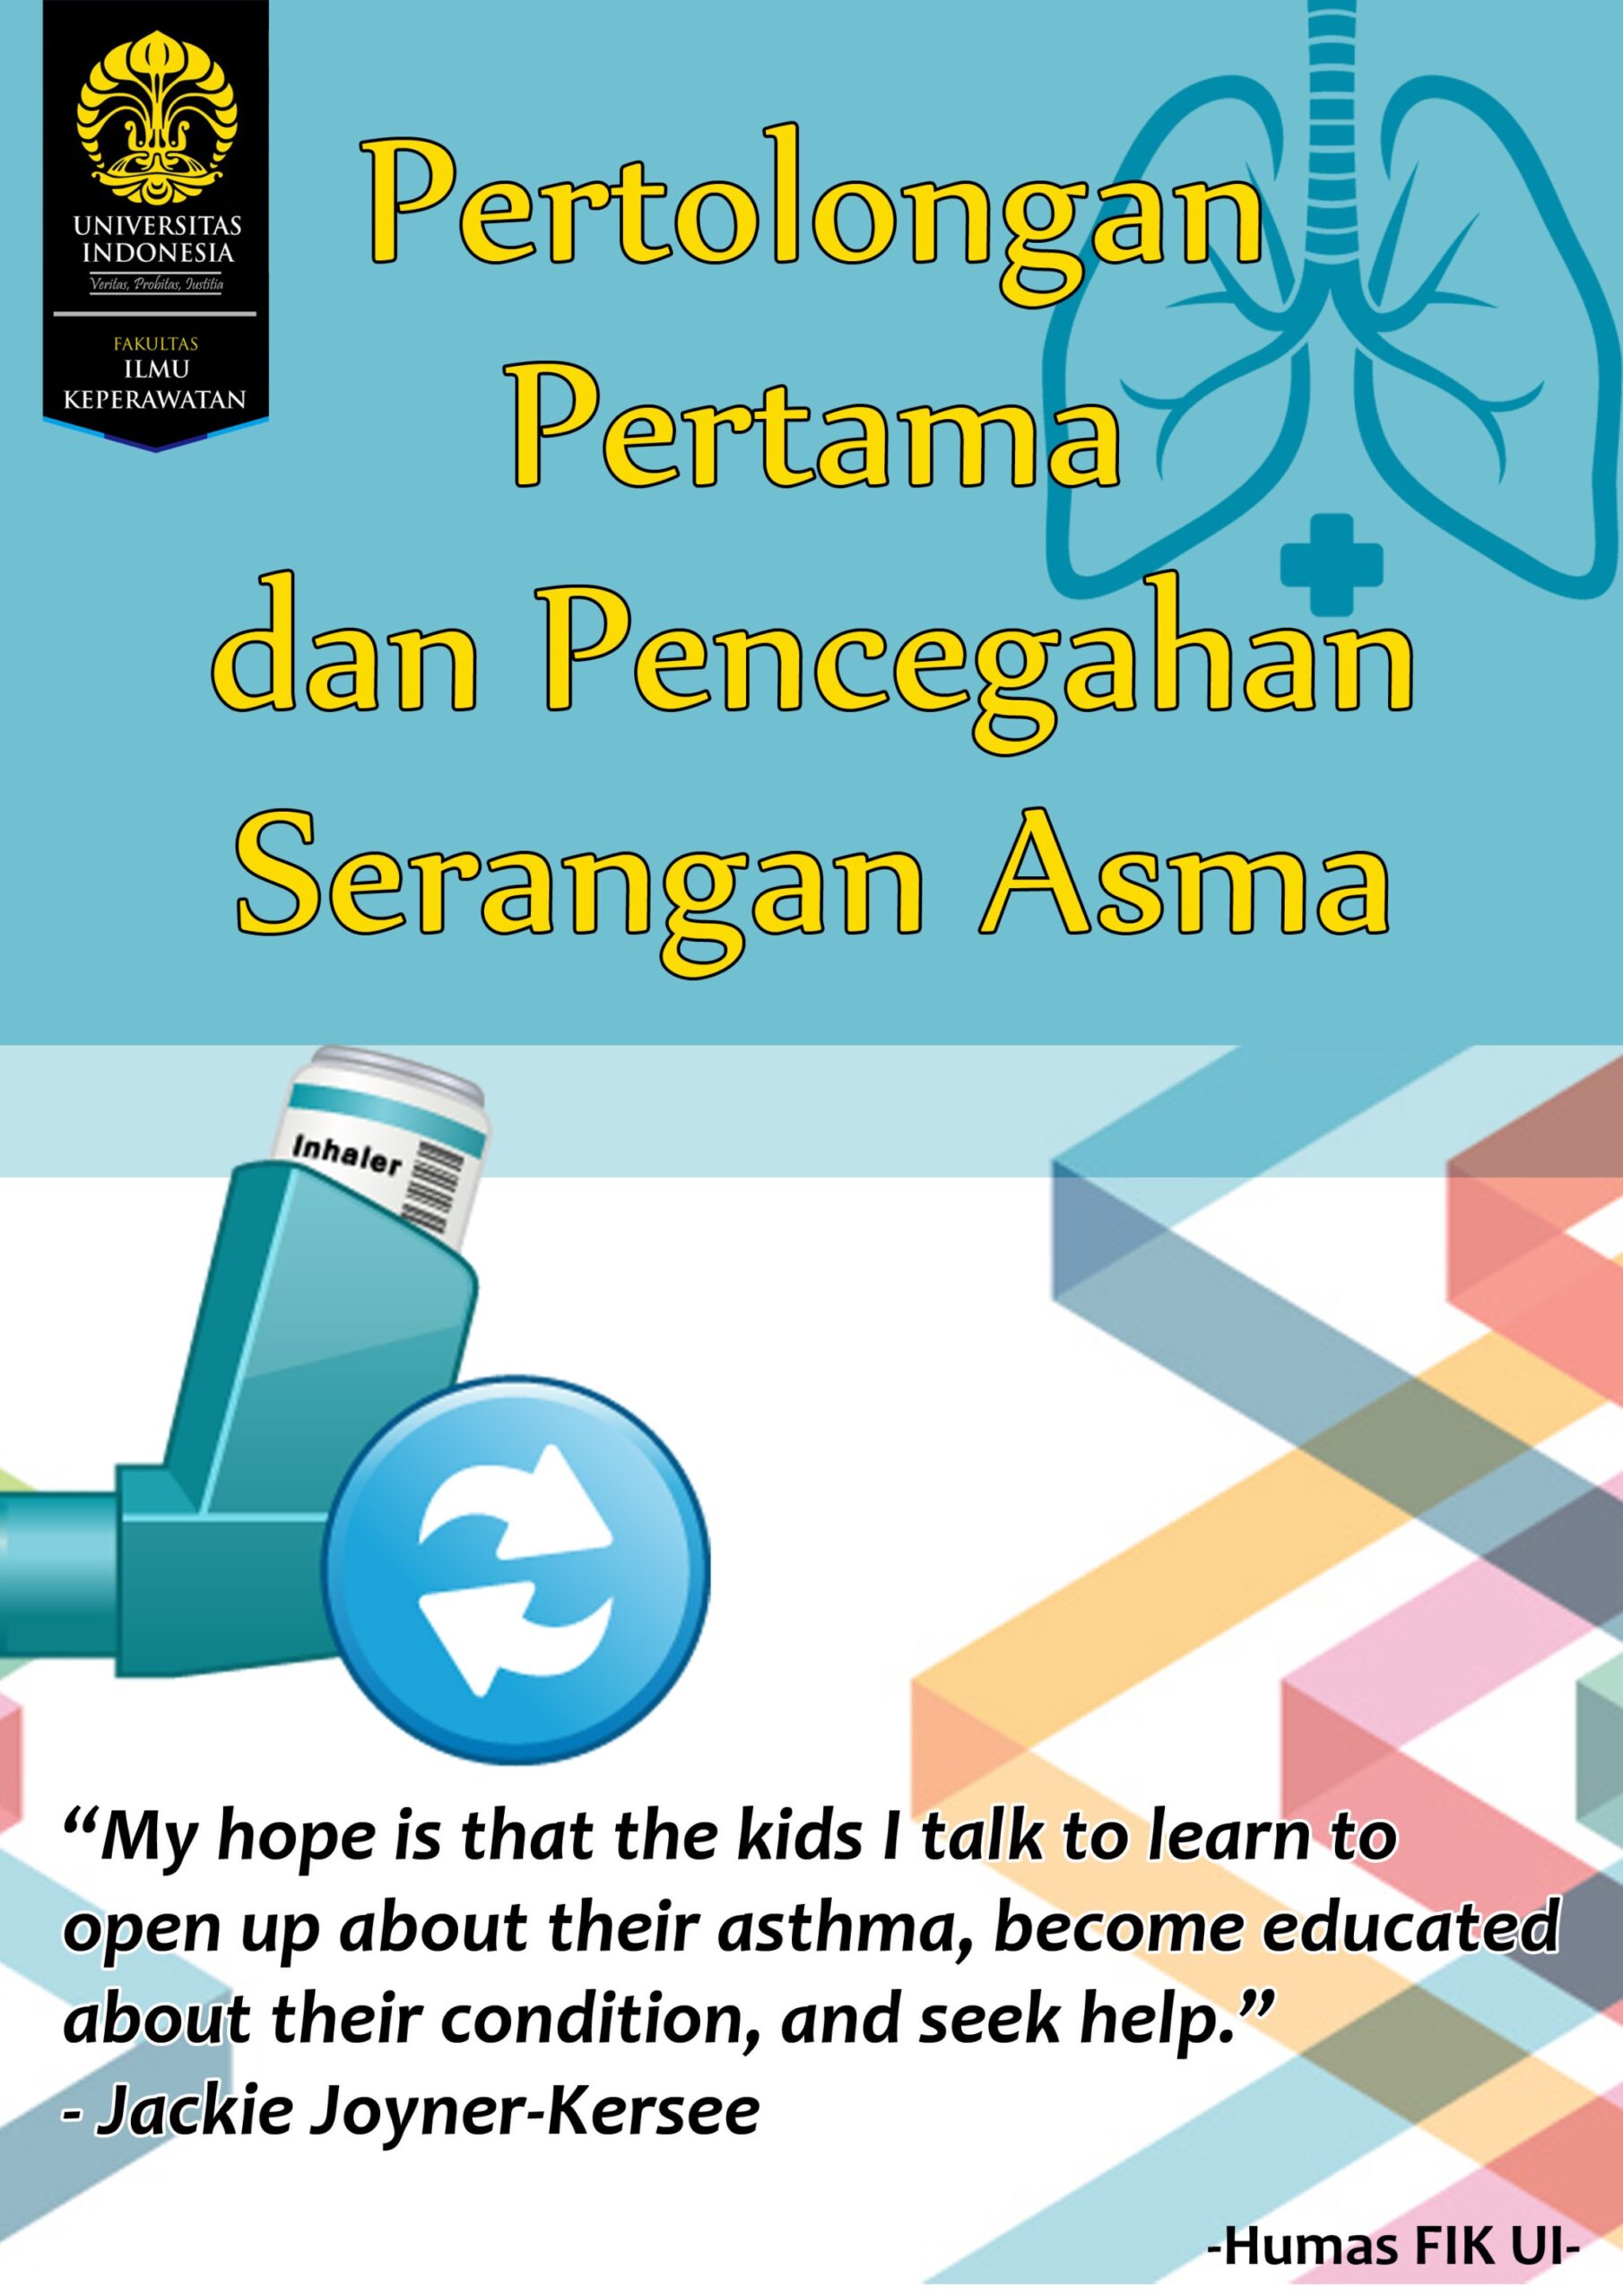 poster tentang upaya asma